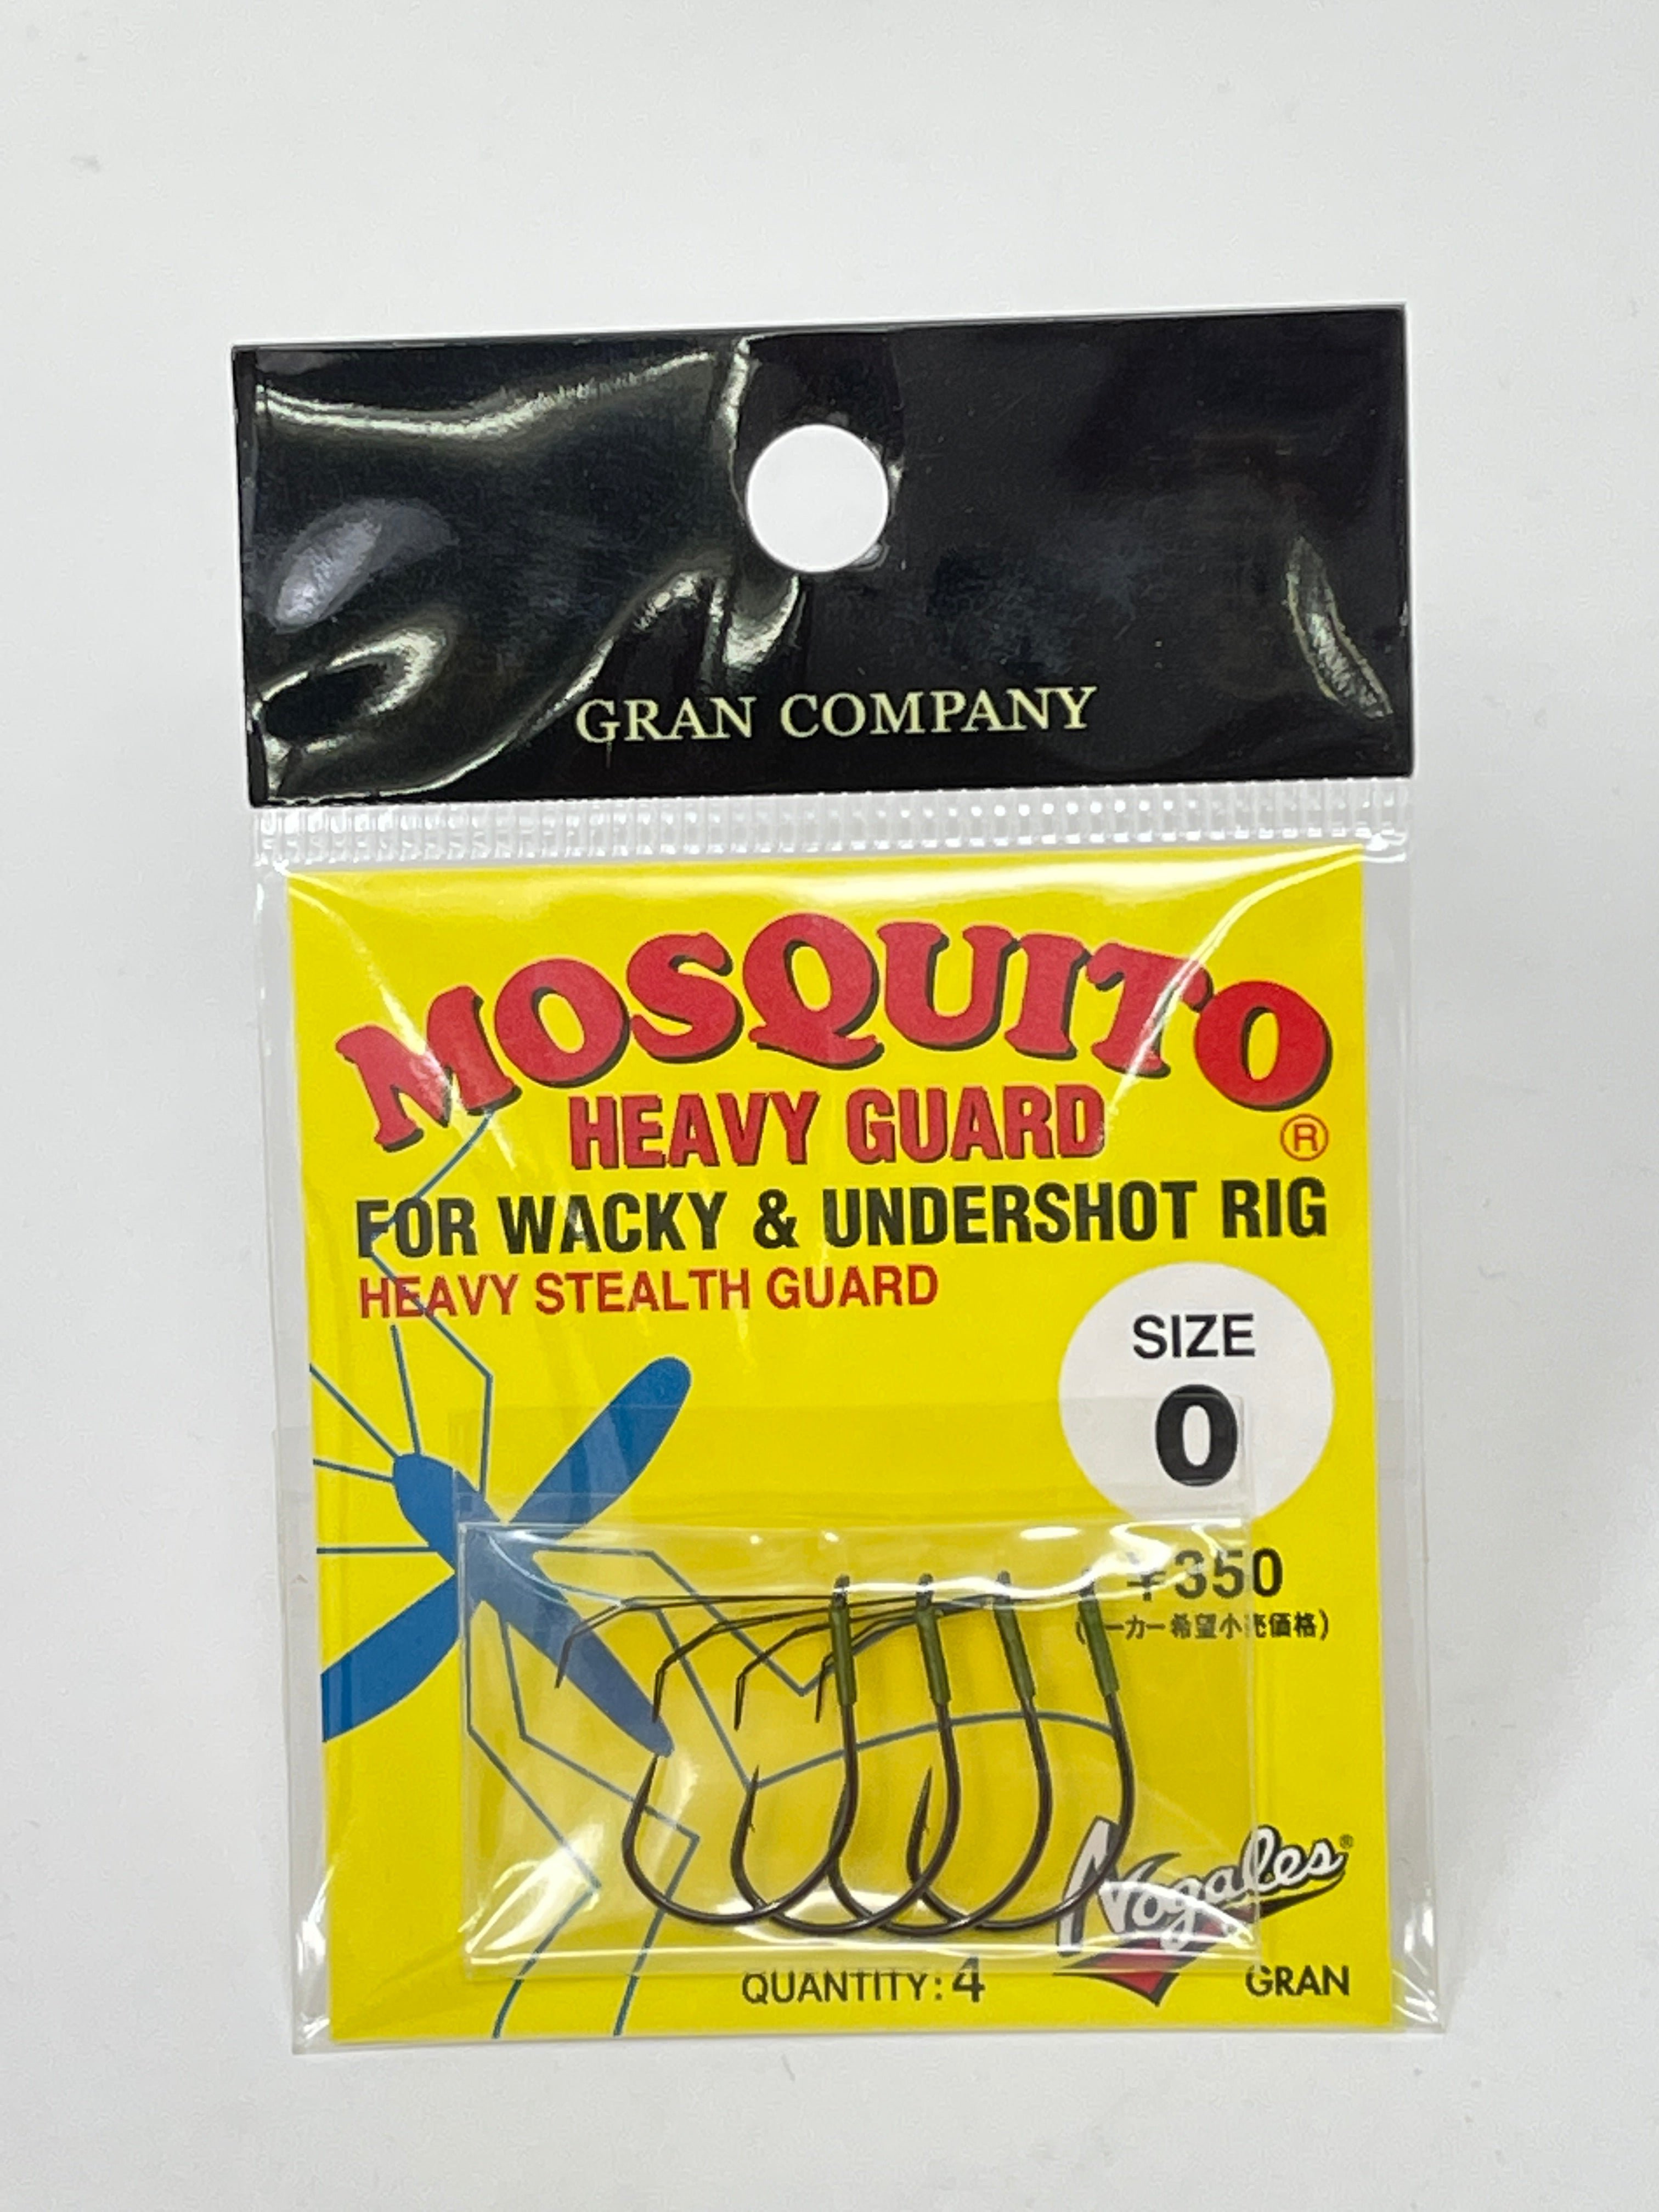 Gran Mosquito Heavy Guard